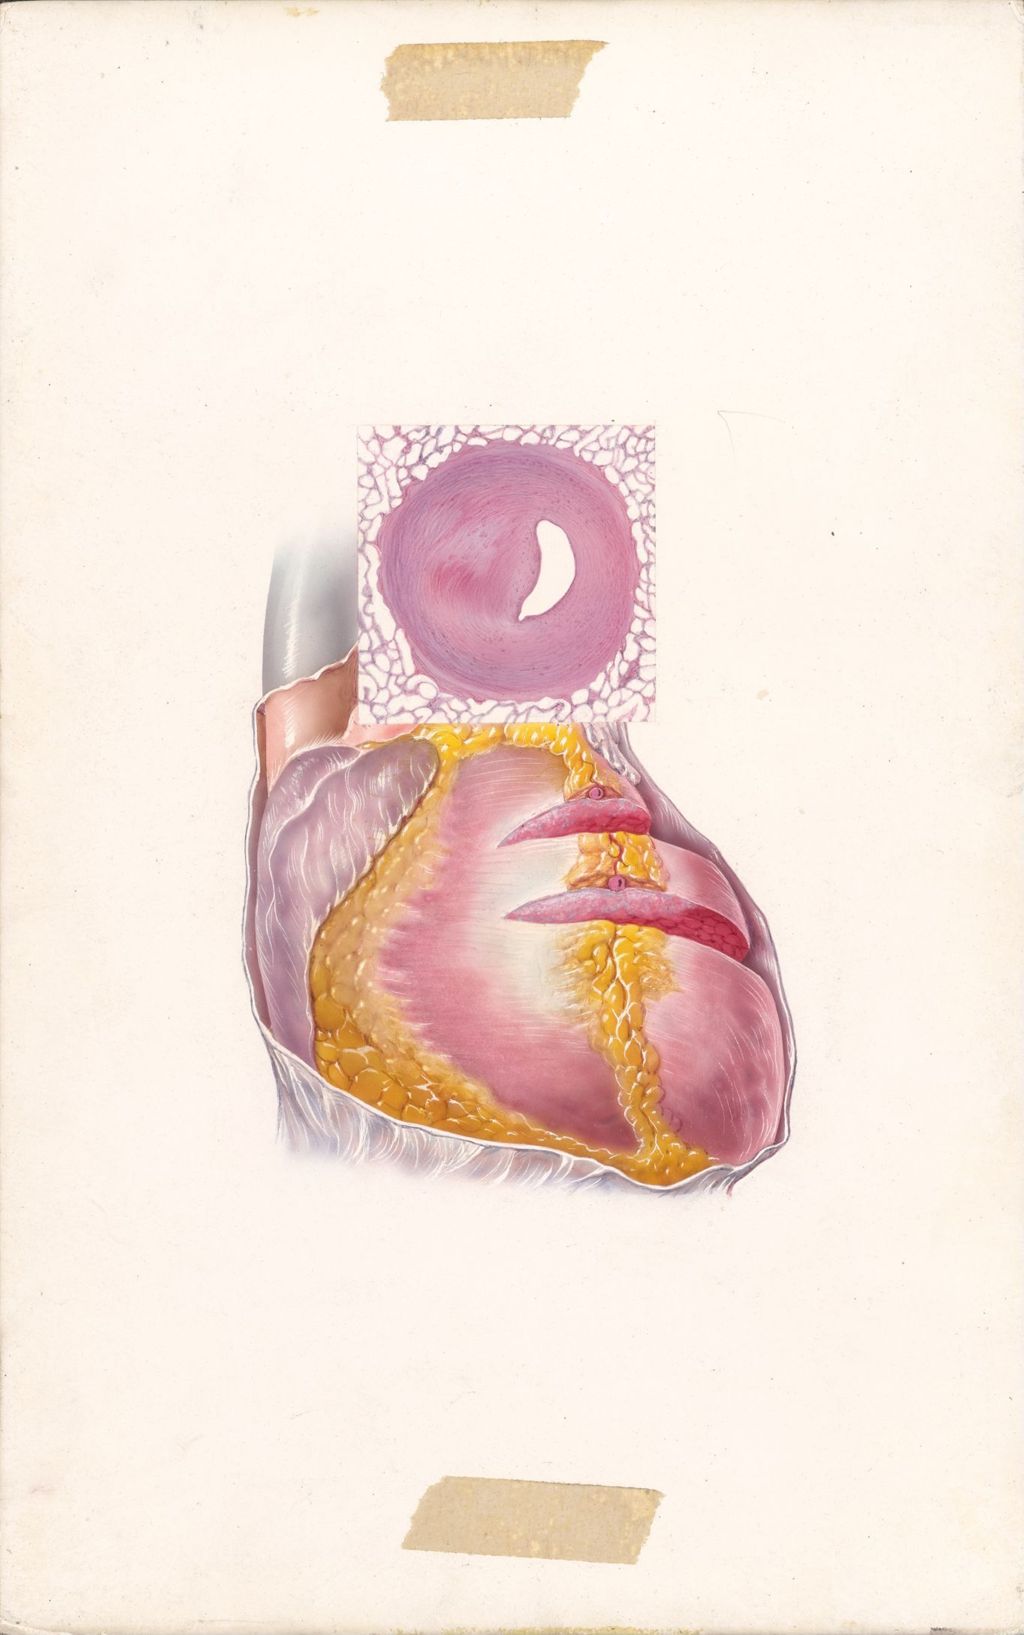 Miniature of Edema of Cardiac Origin, Arteriosclerotic Heart Disease